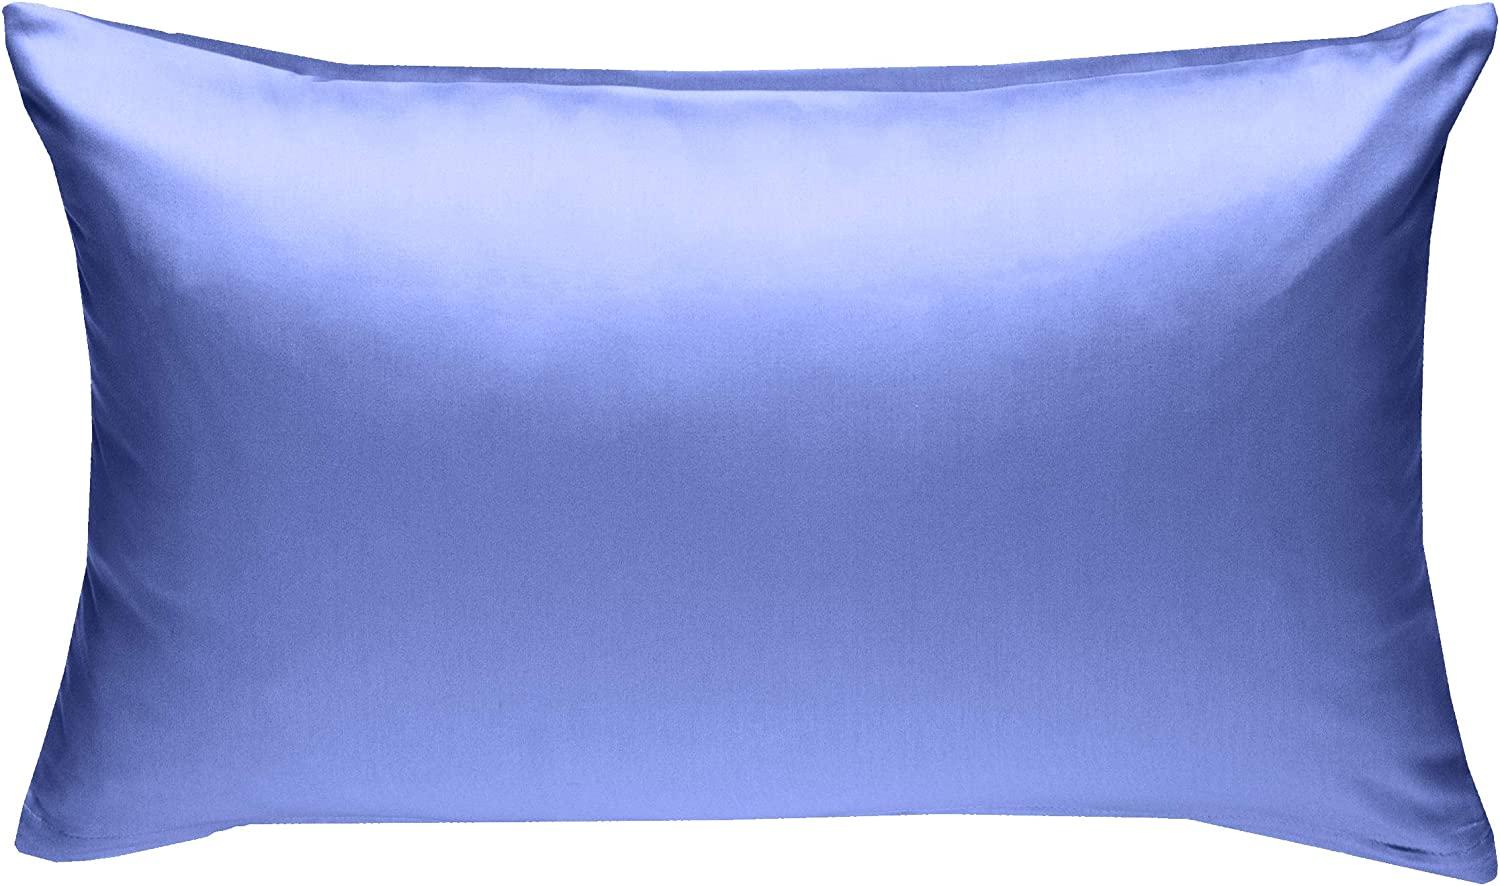 Bettwaesche-mit-Stil Mako-Satin / Baumwollsatin Bettwäsche uni / einfarbig hellblau Kissenbezug 40x60 cm Bild 1